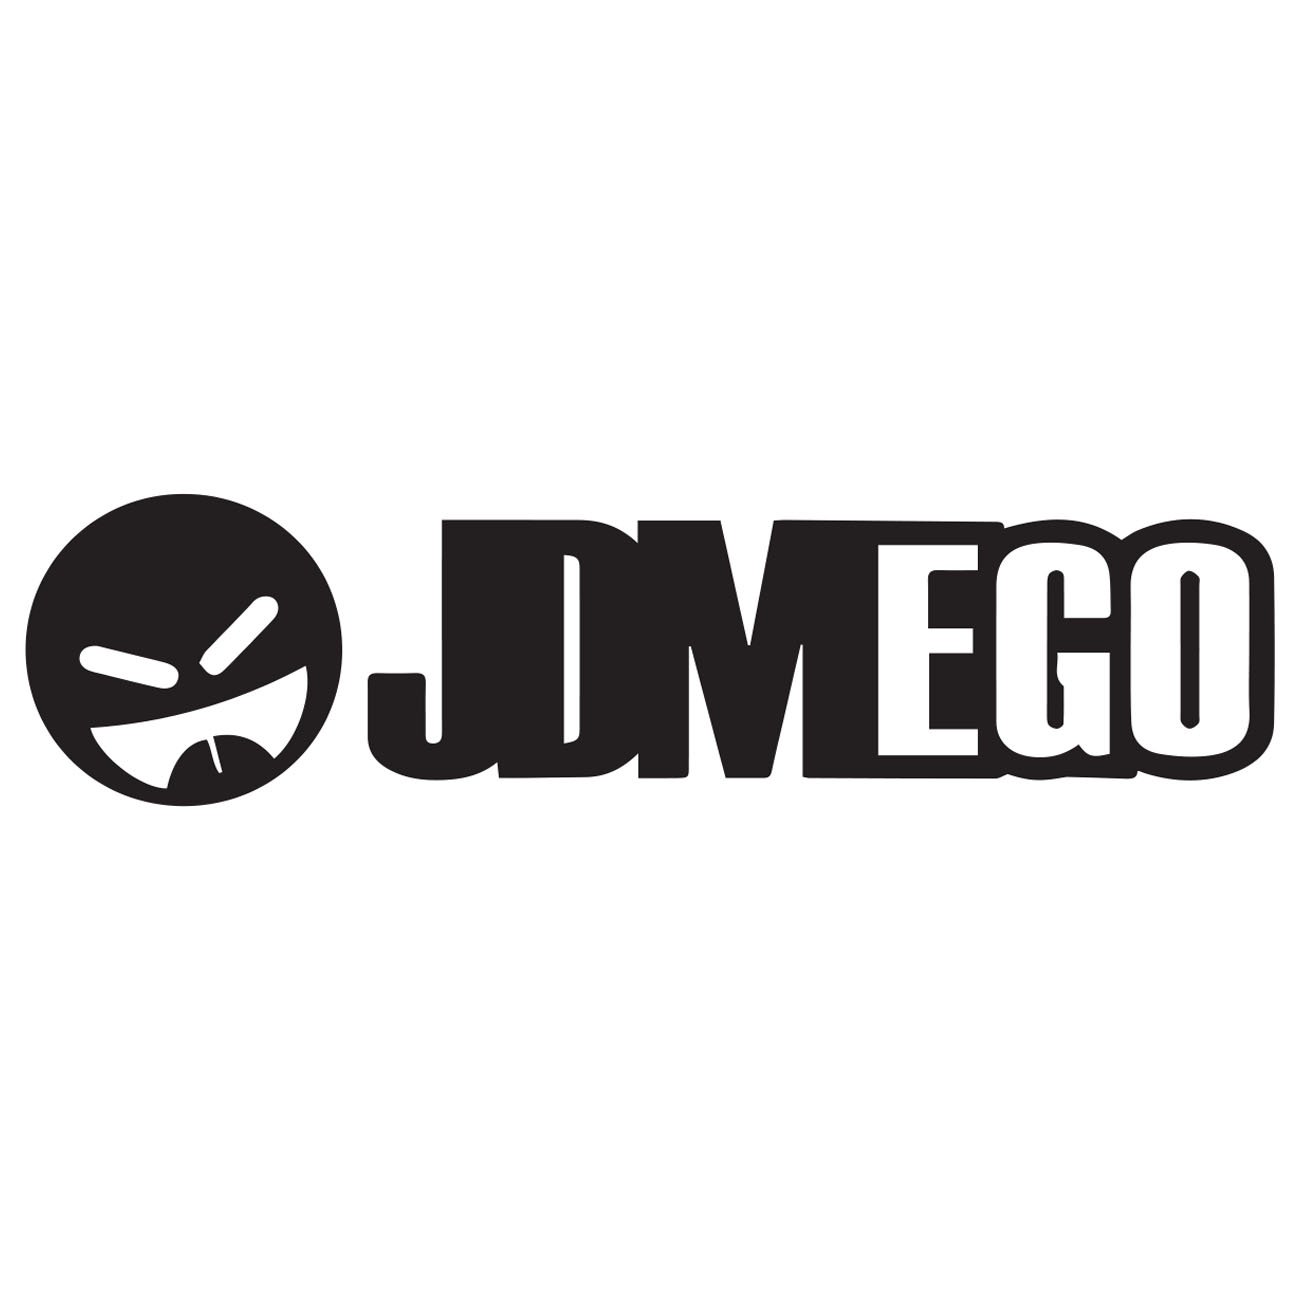 JDM ego 1